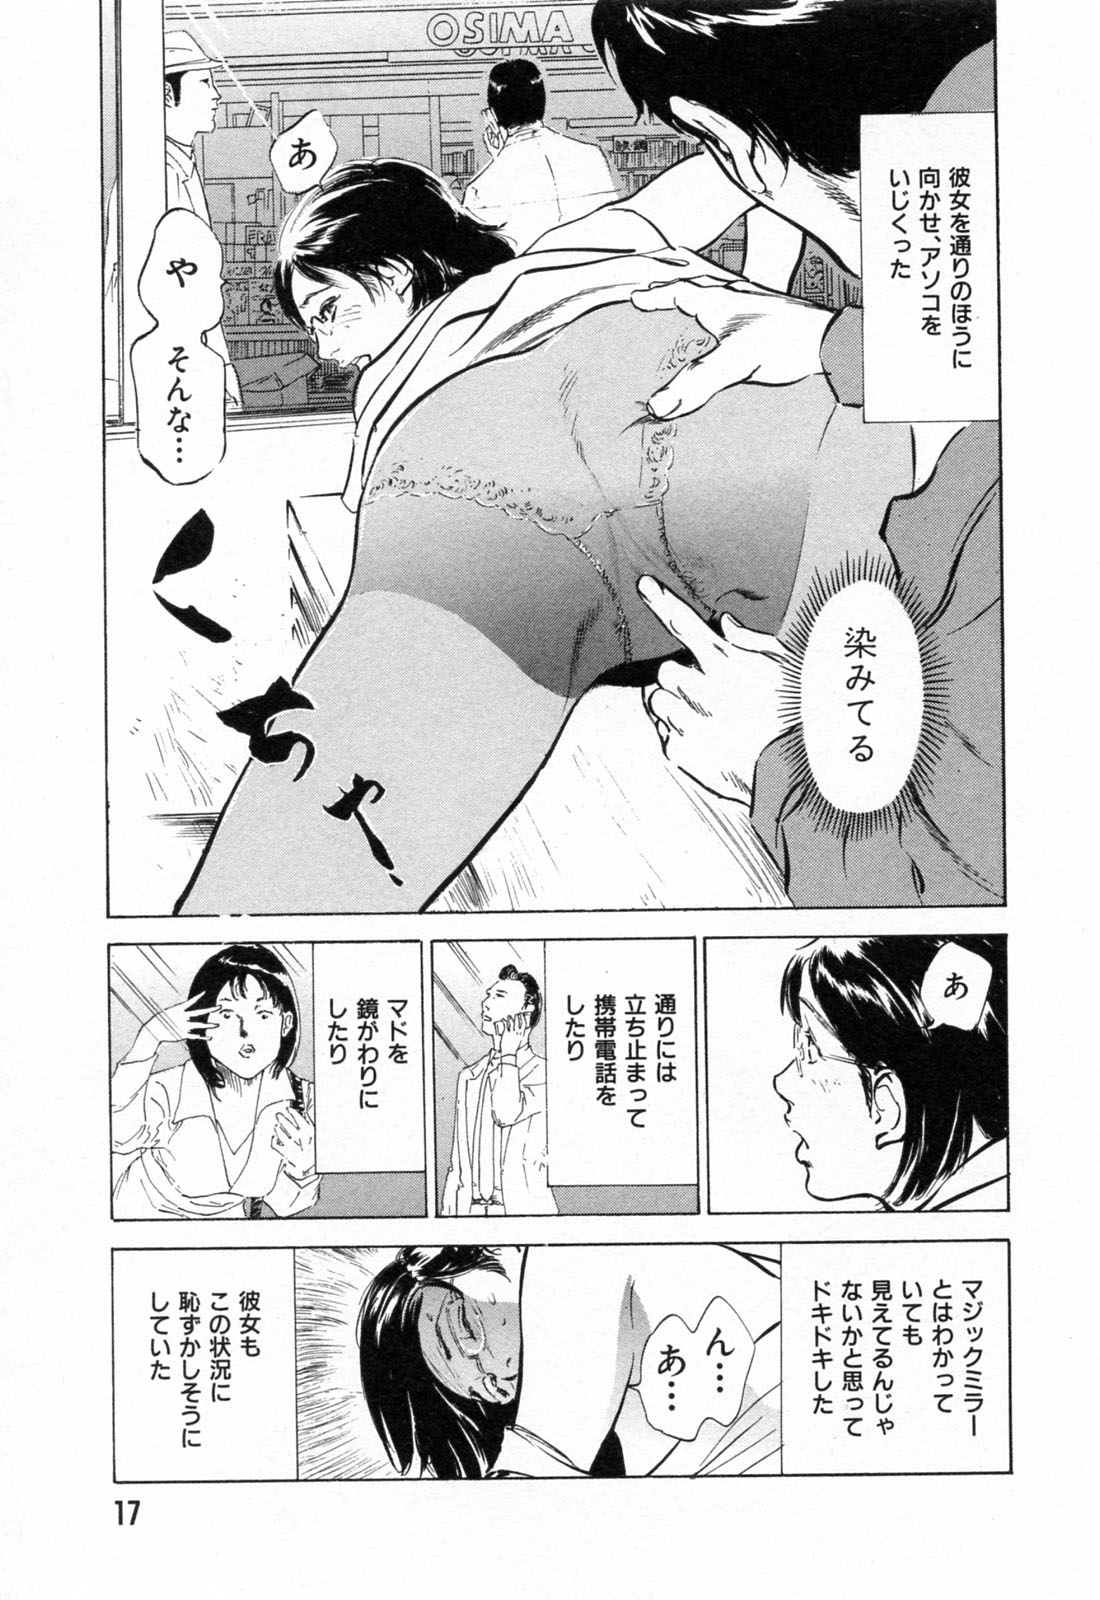 [Hazuki Kaoru] Gokinjo Okusama no Naishobanashi 1 page 19 full